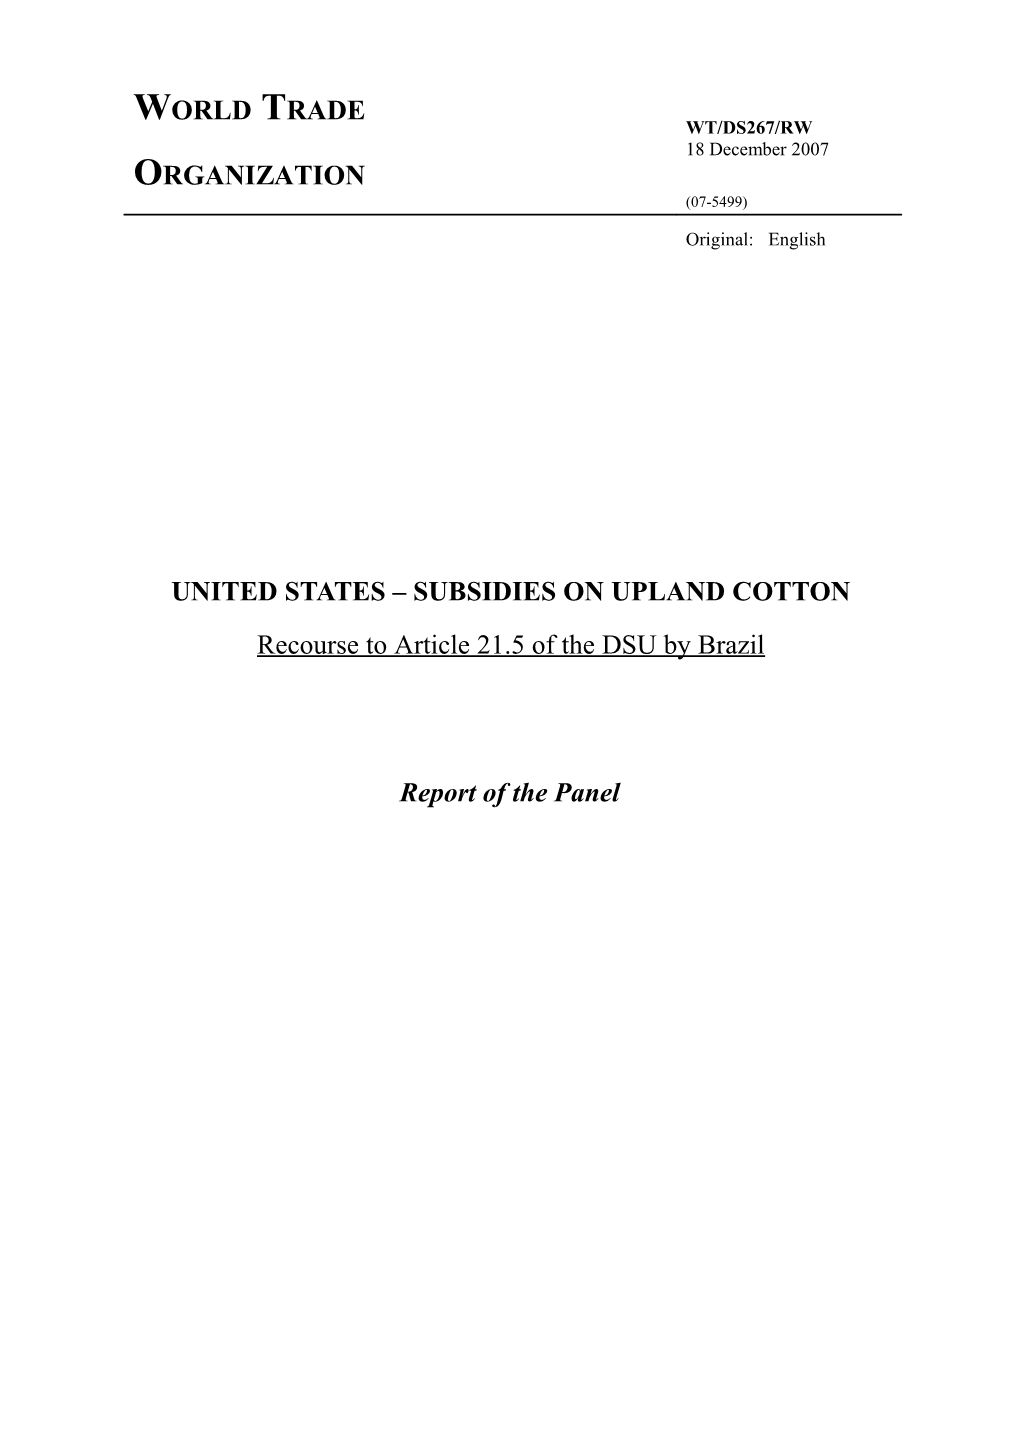 United States Subsidies on Upland Cotton